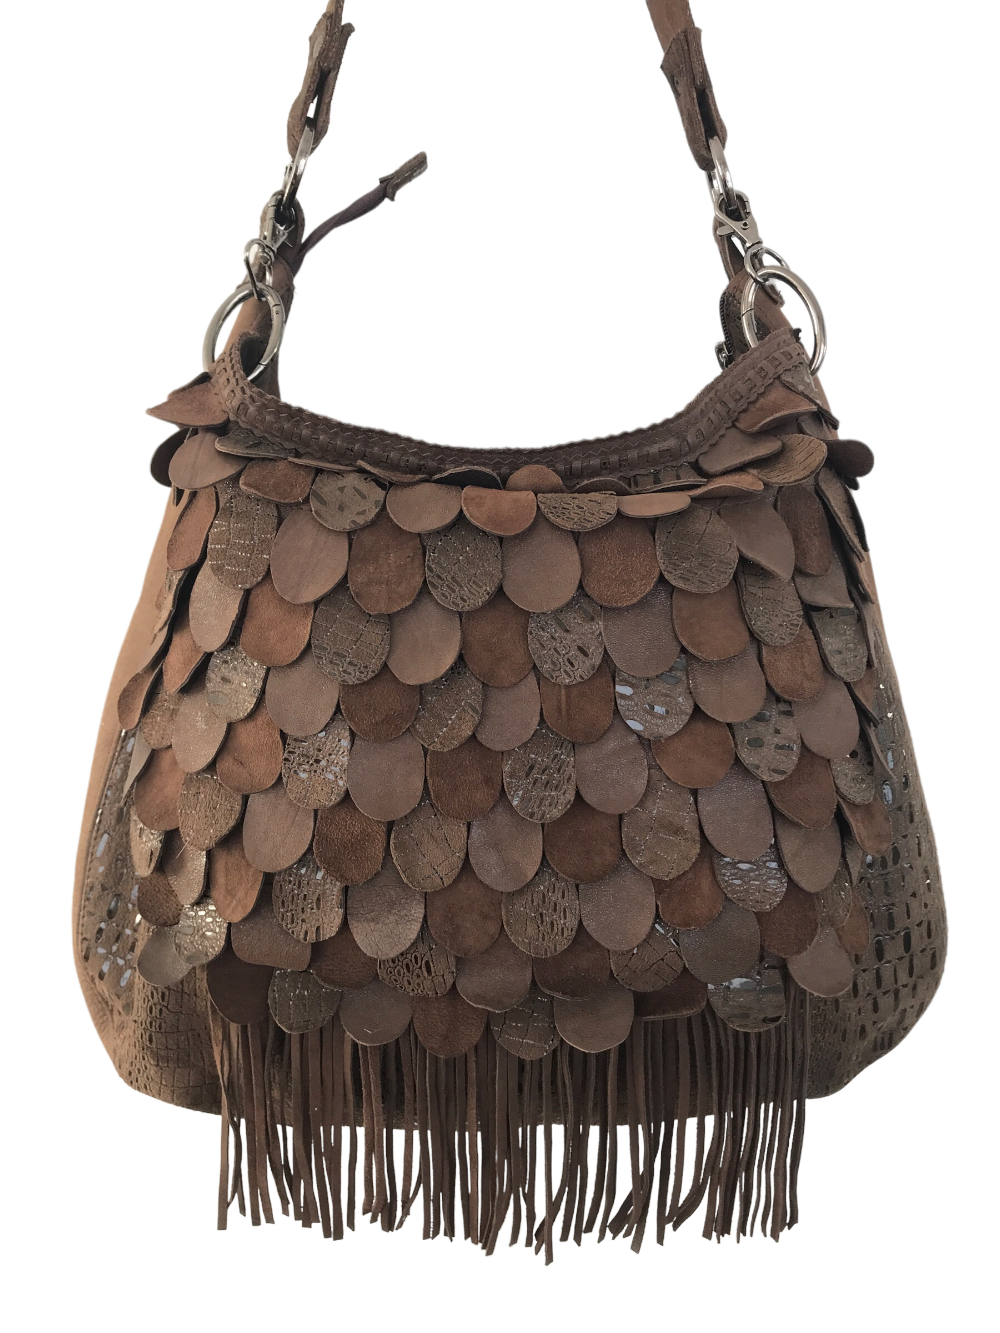 картинка кожаные  "Вестерн" - Женская сумка из кожи с декором из кожаных "чешуек", 3 в 1, коричневая   от Ирины Берзиной